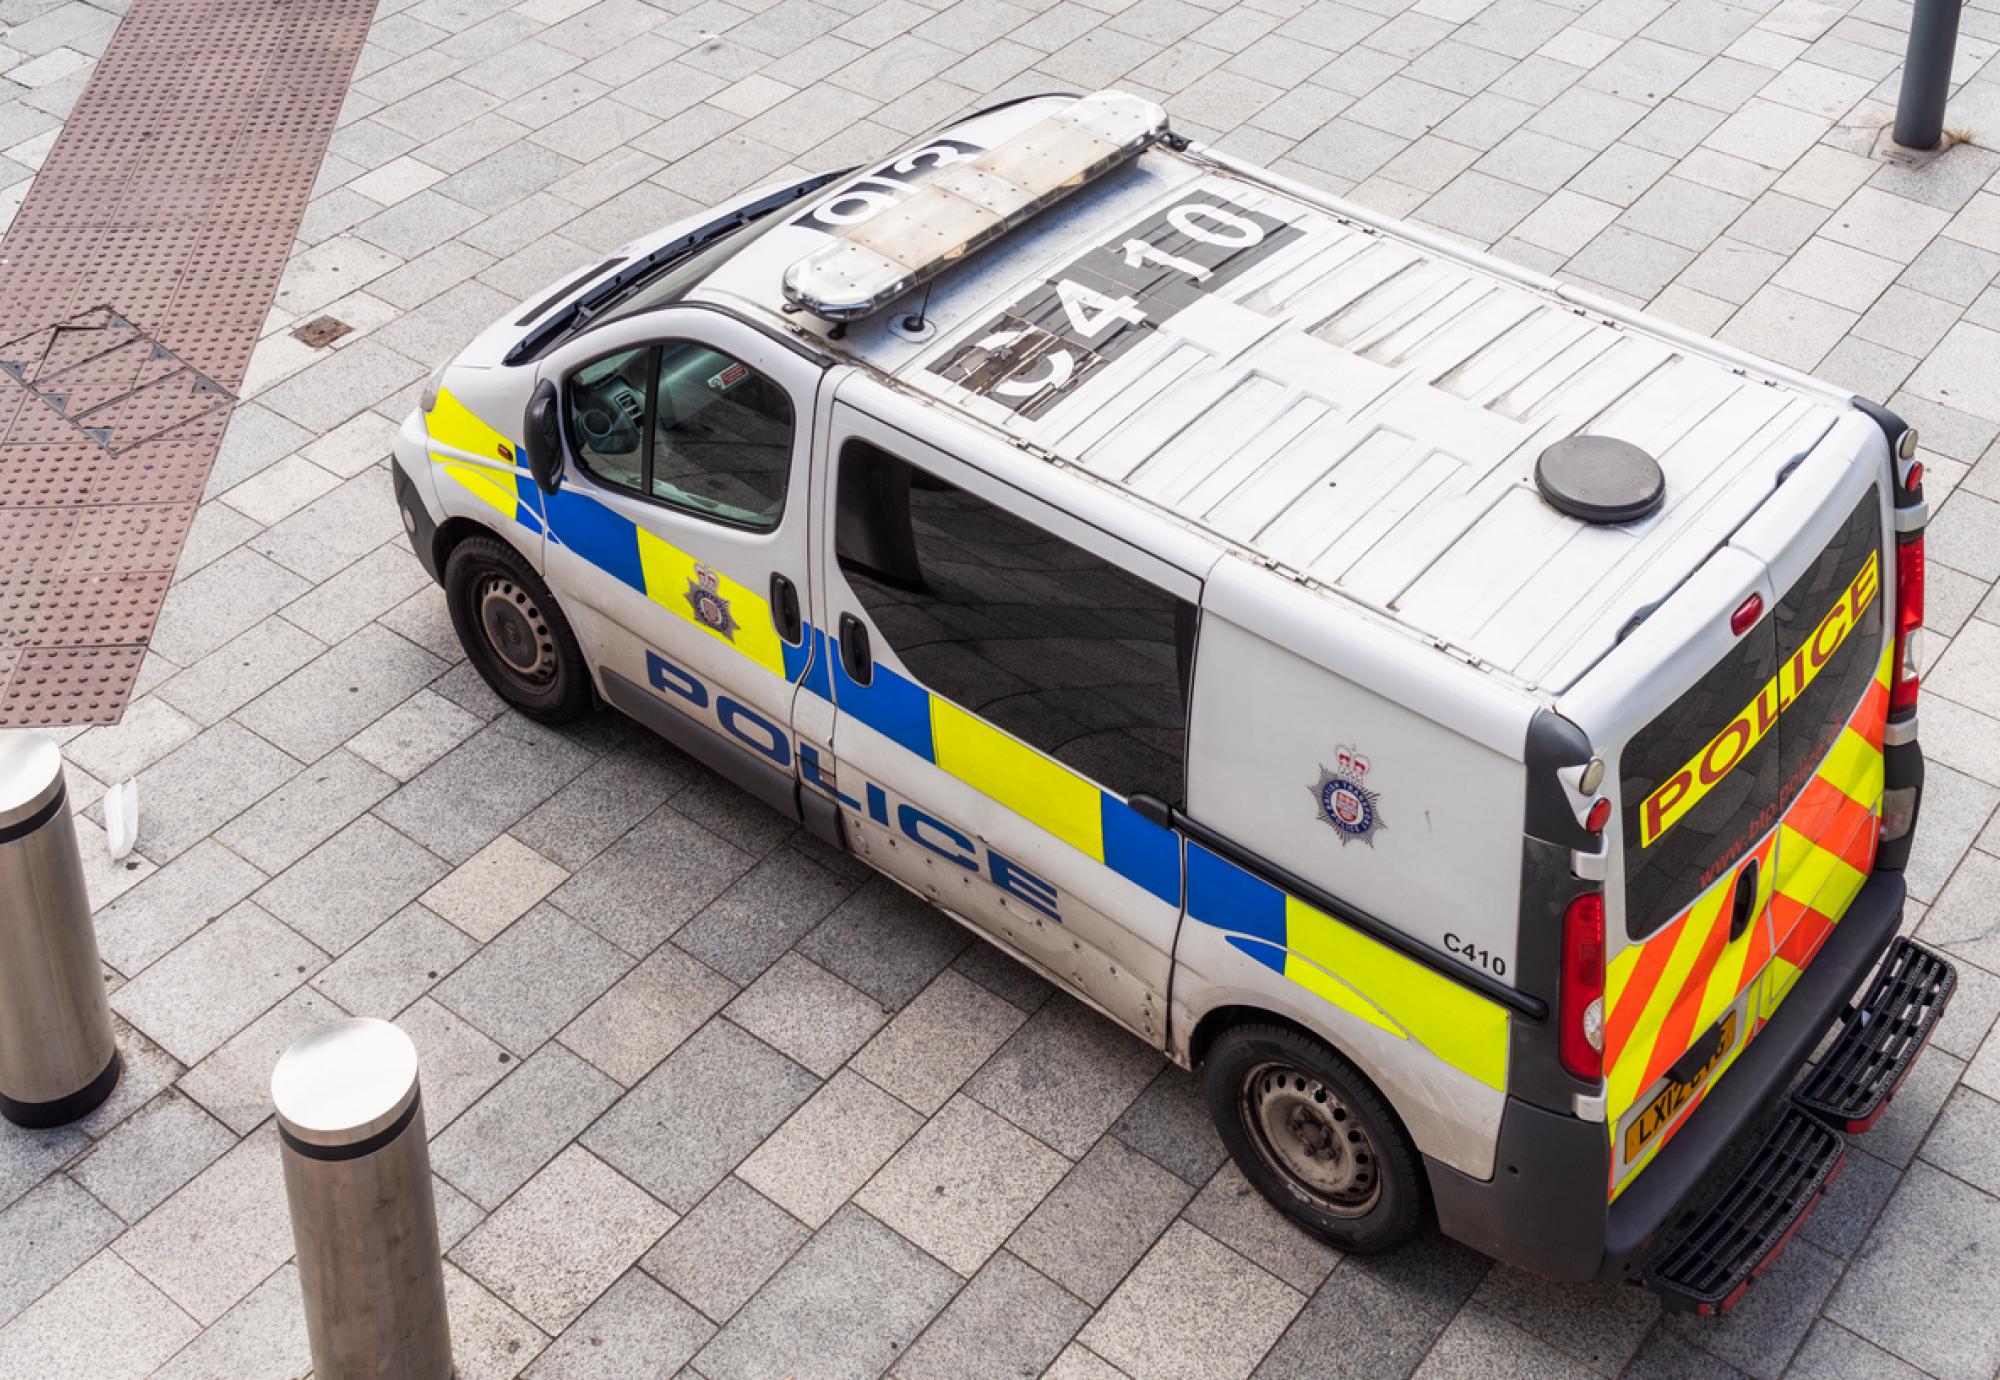 West Midlands Police van